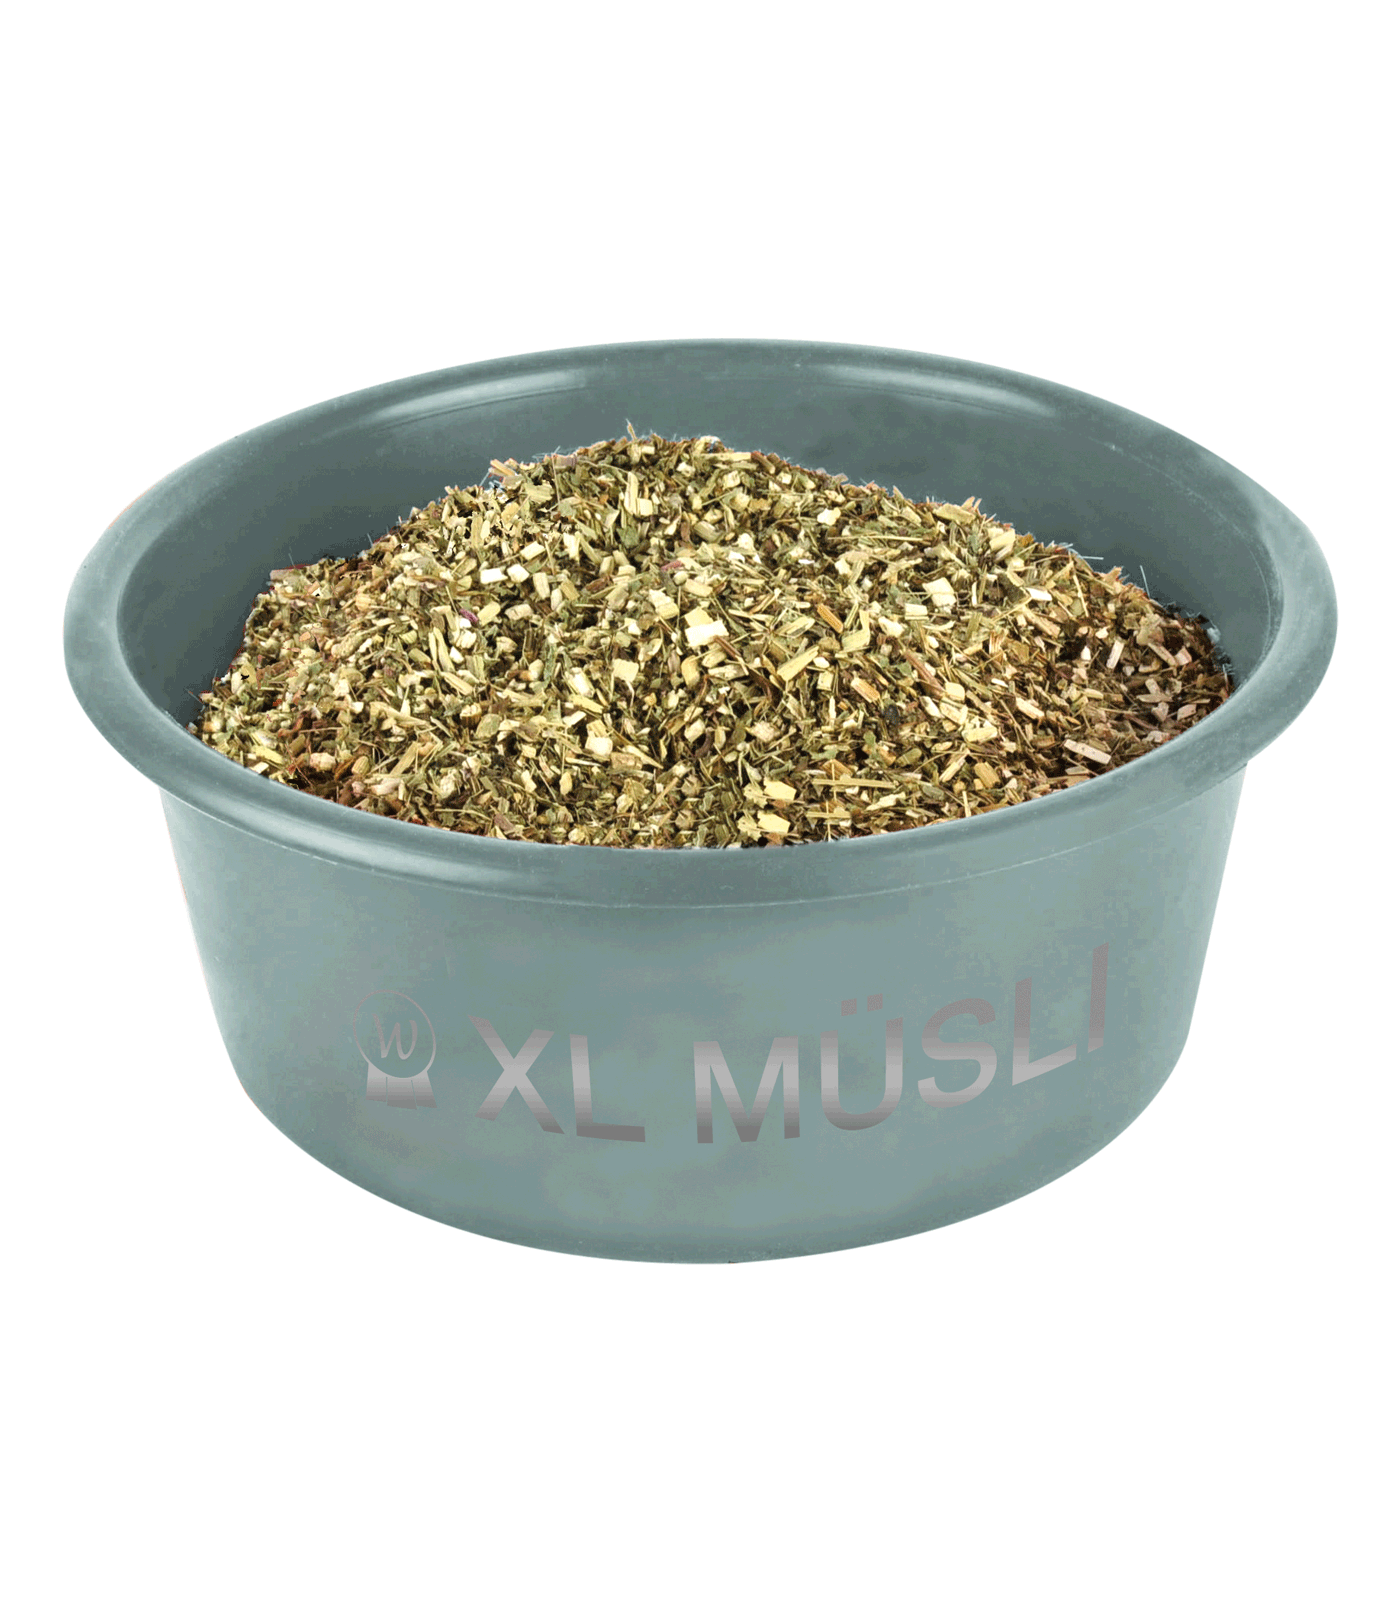 XL "Muesli" Bowl with lid mistletoe